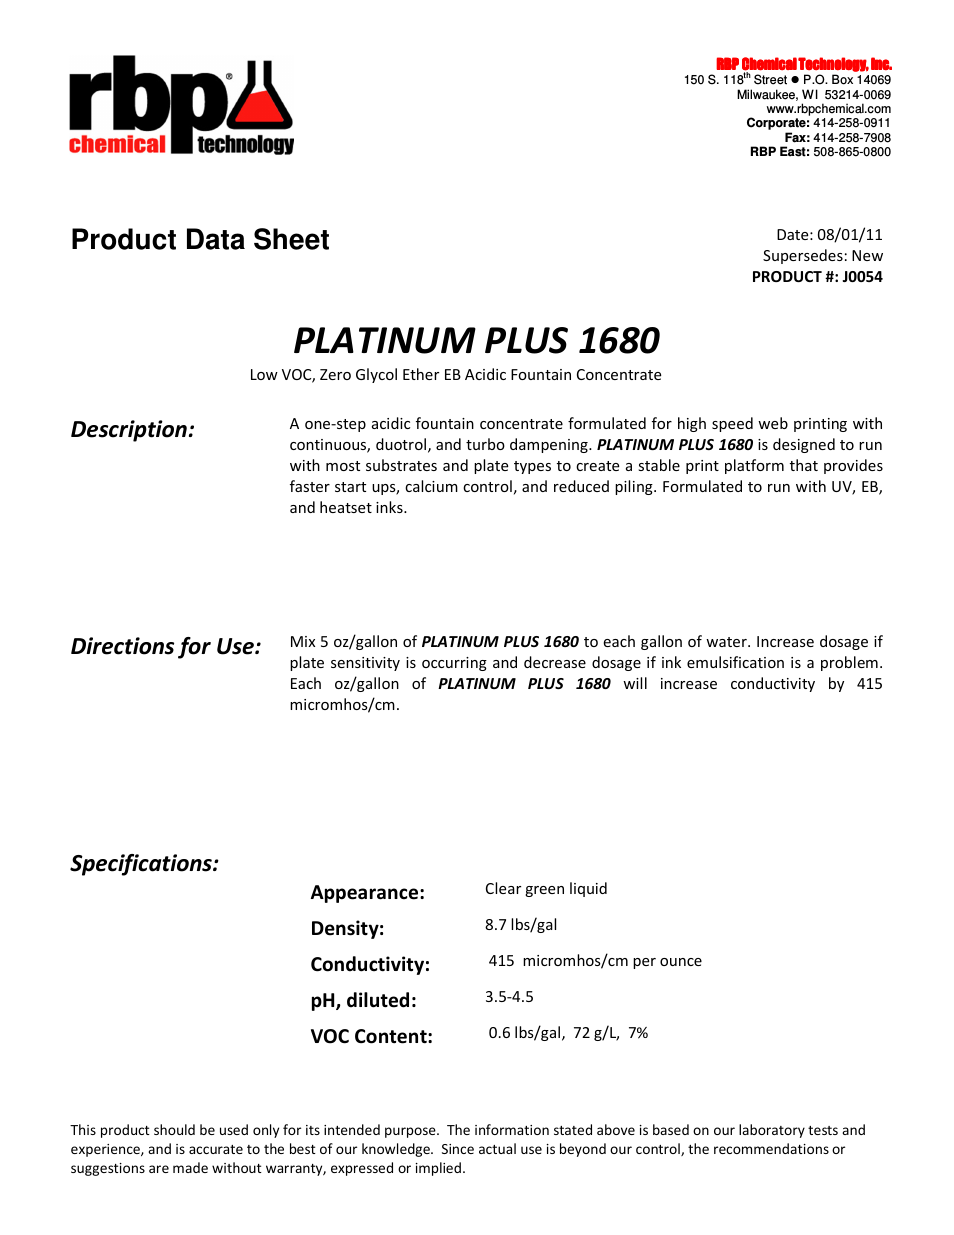 J0054 PLATINUM PLUS 1680